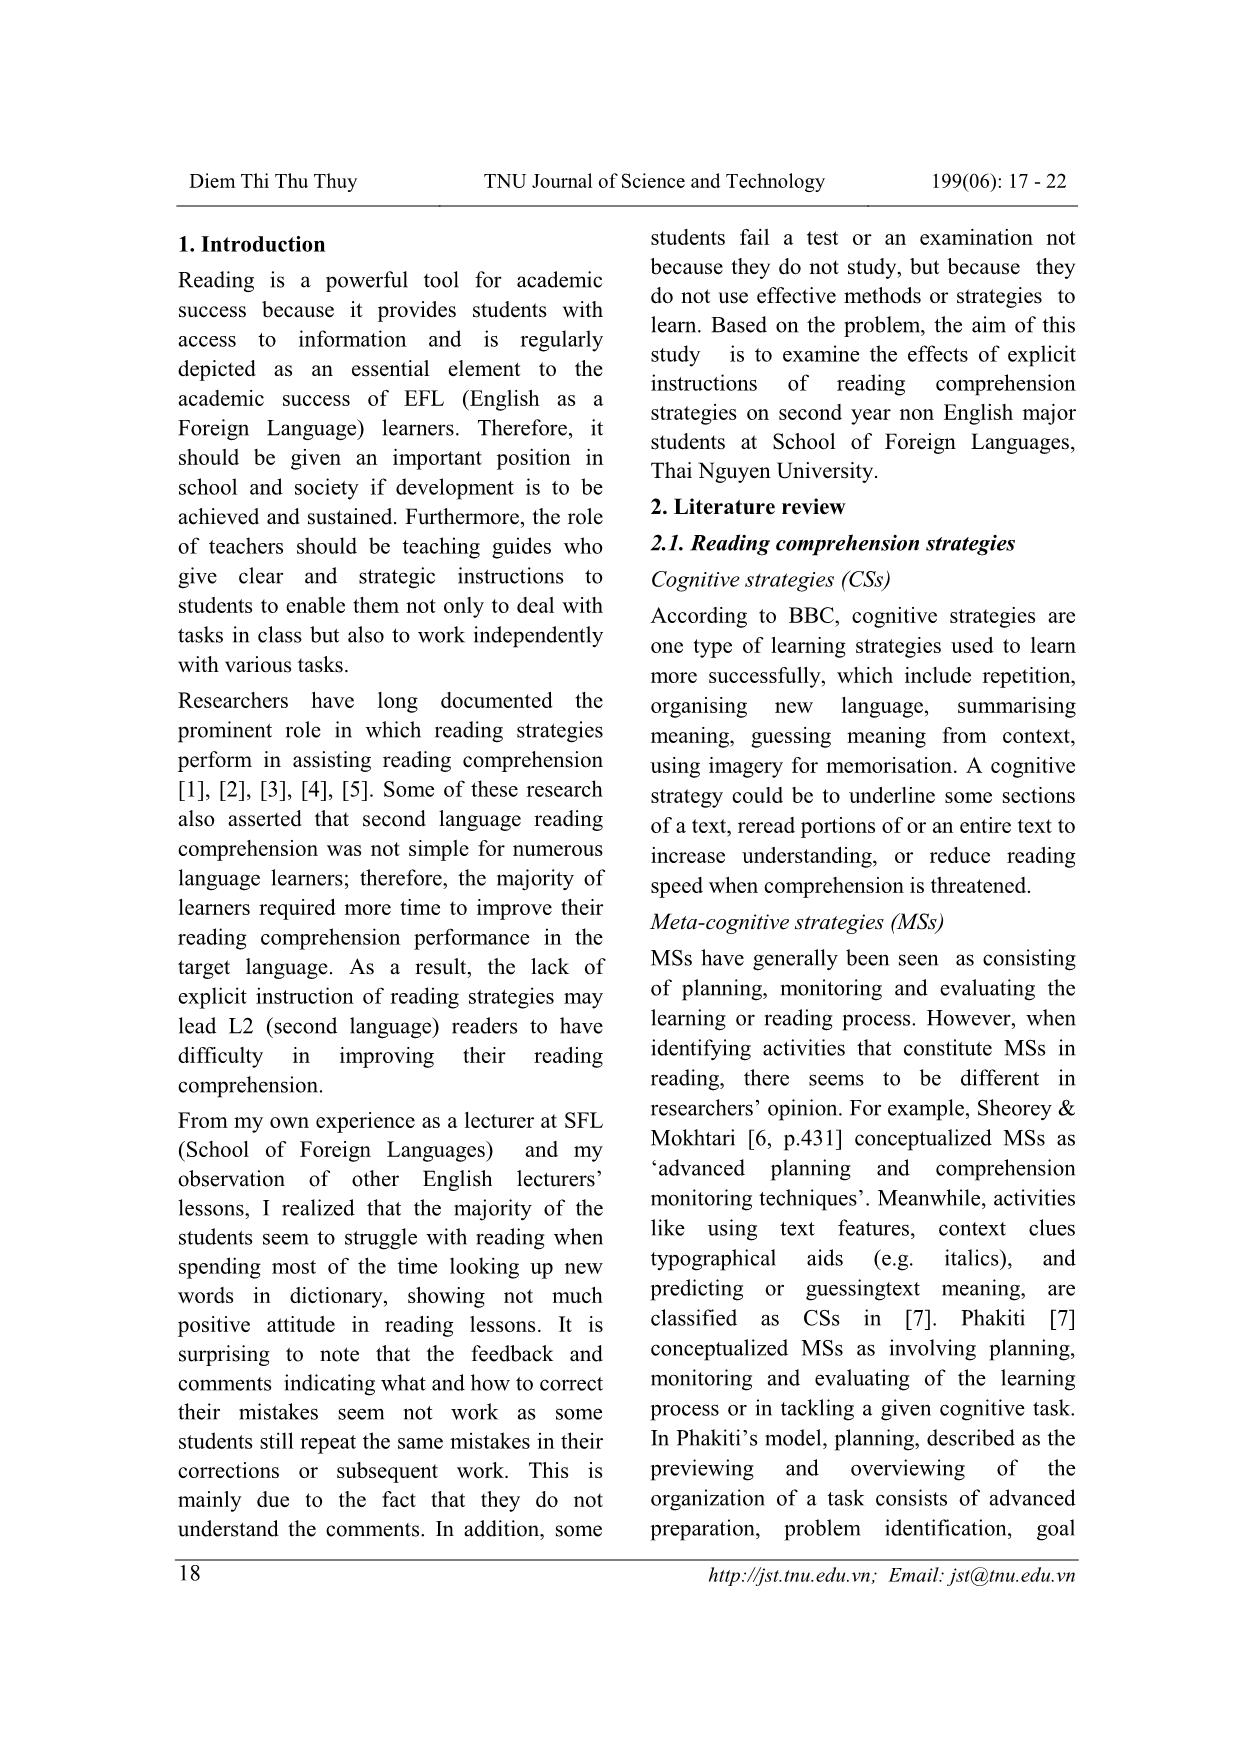 Ảnh hưởng của lời dẫn tường minh cho các chiến lược đọc đến kỹ năng đọc hiểu tại khoa Ngoại ngữ, Đại học Thái Nguyên trang 2